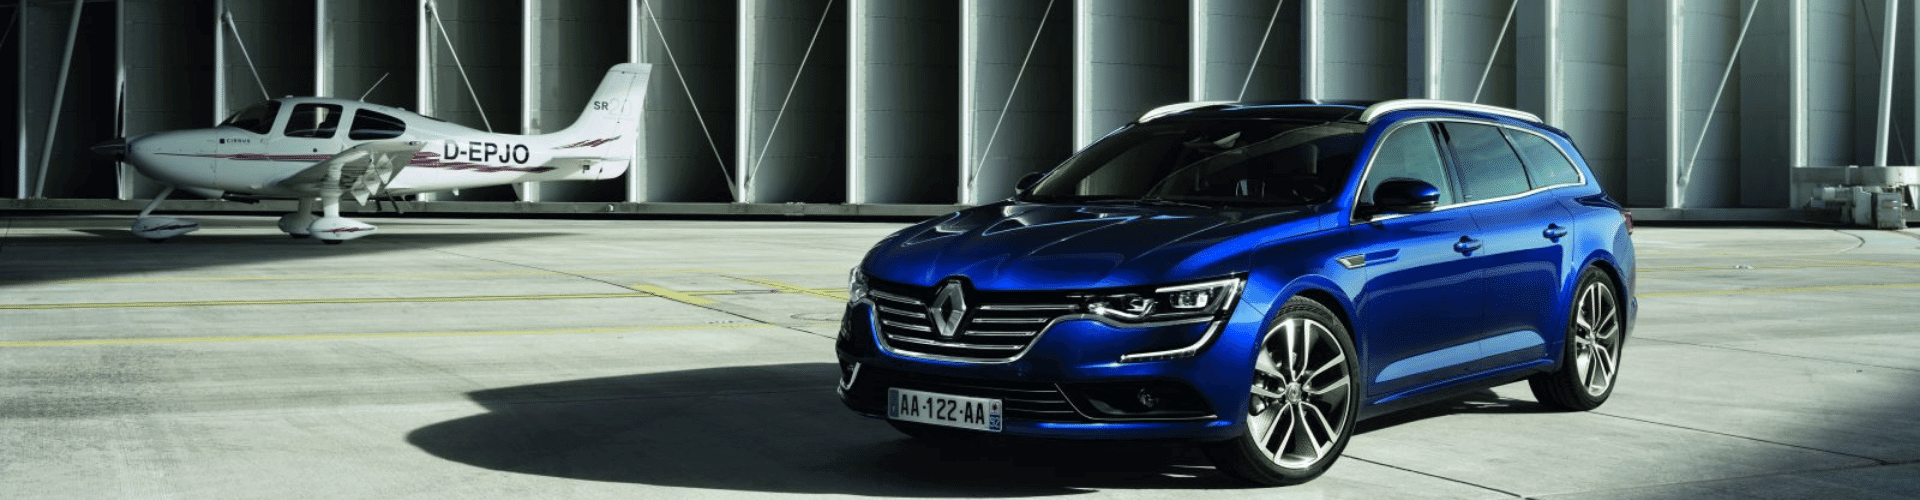 Renault zakelijk leasen